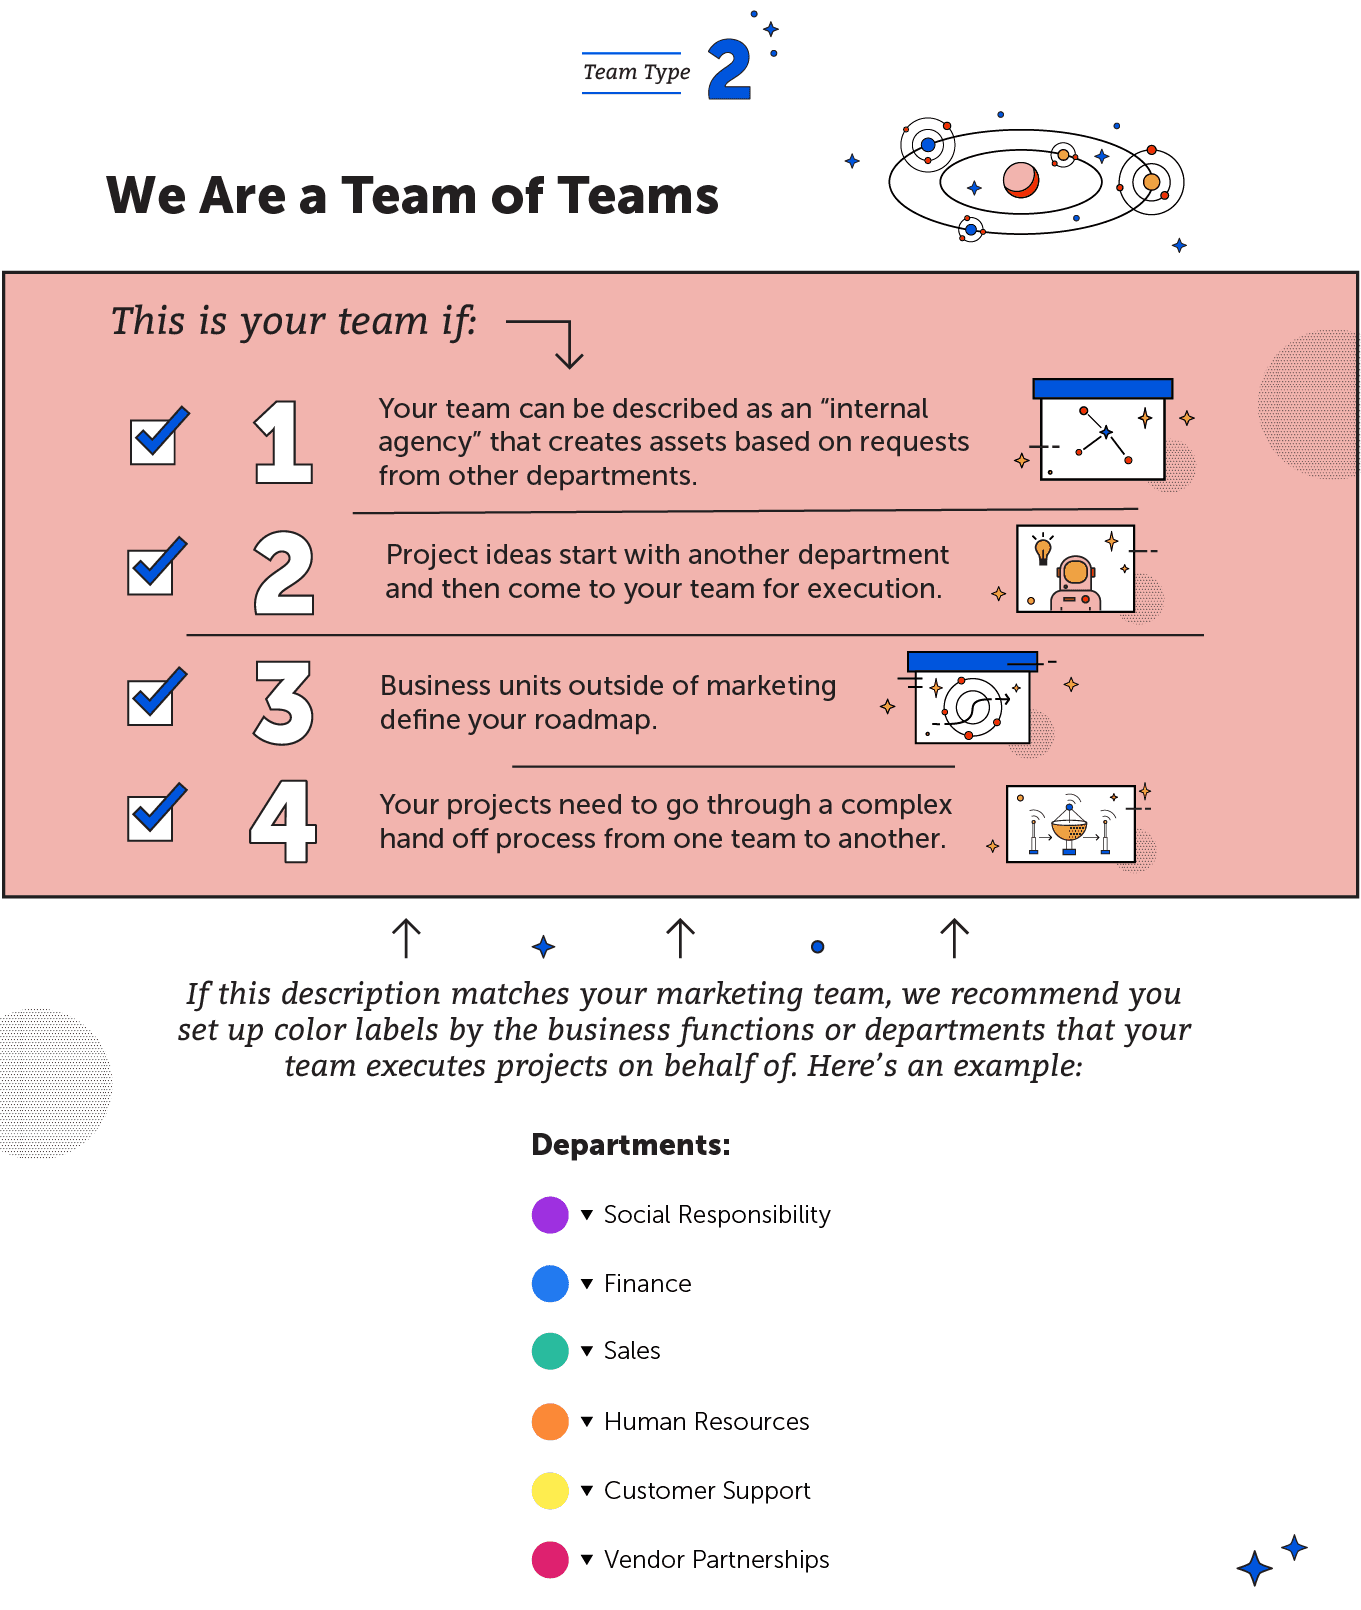 We are a team of teams